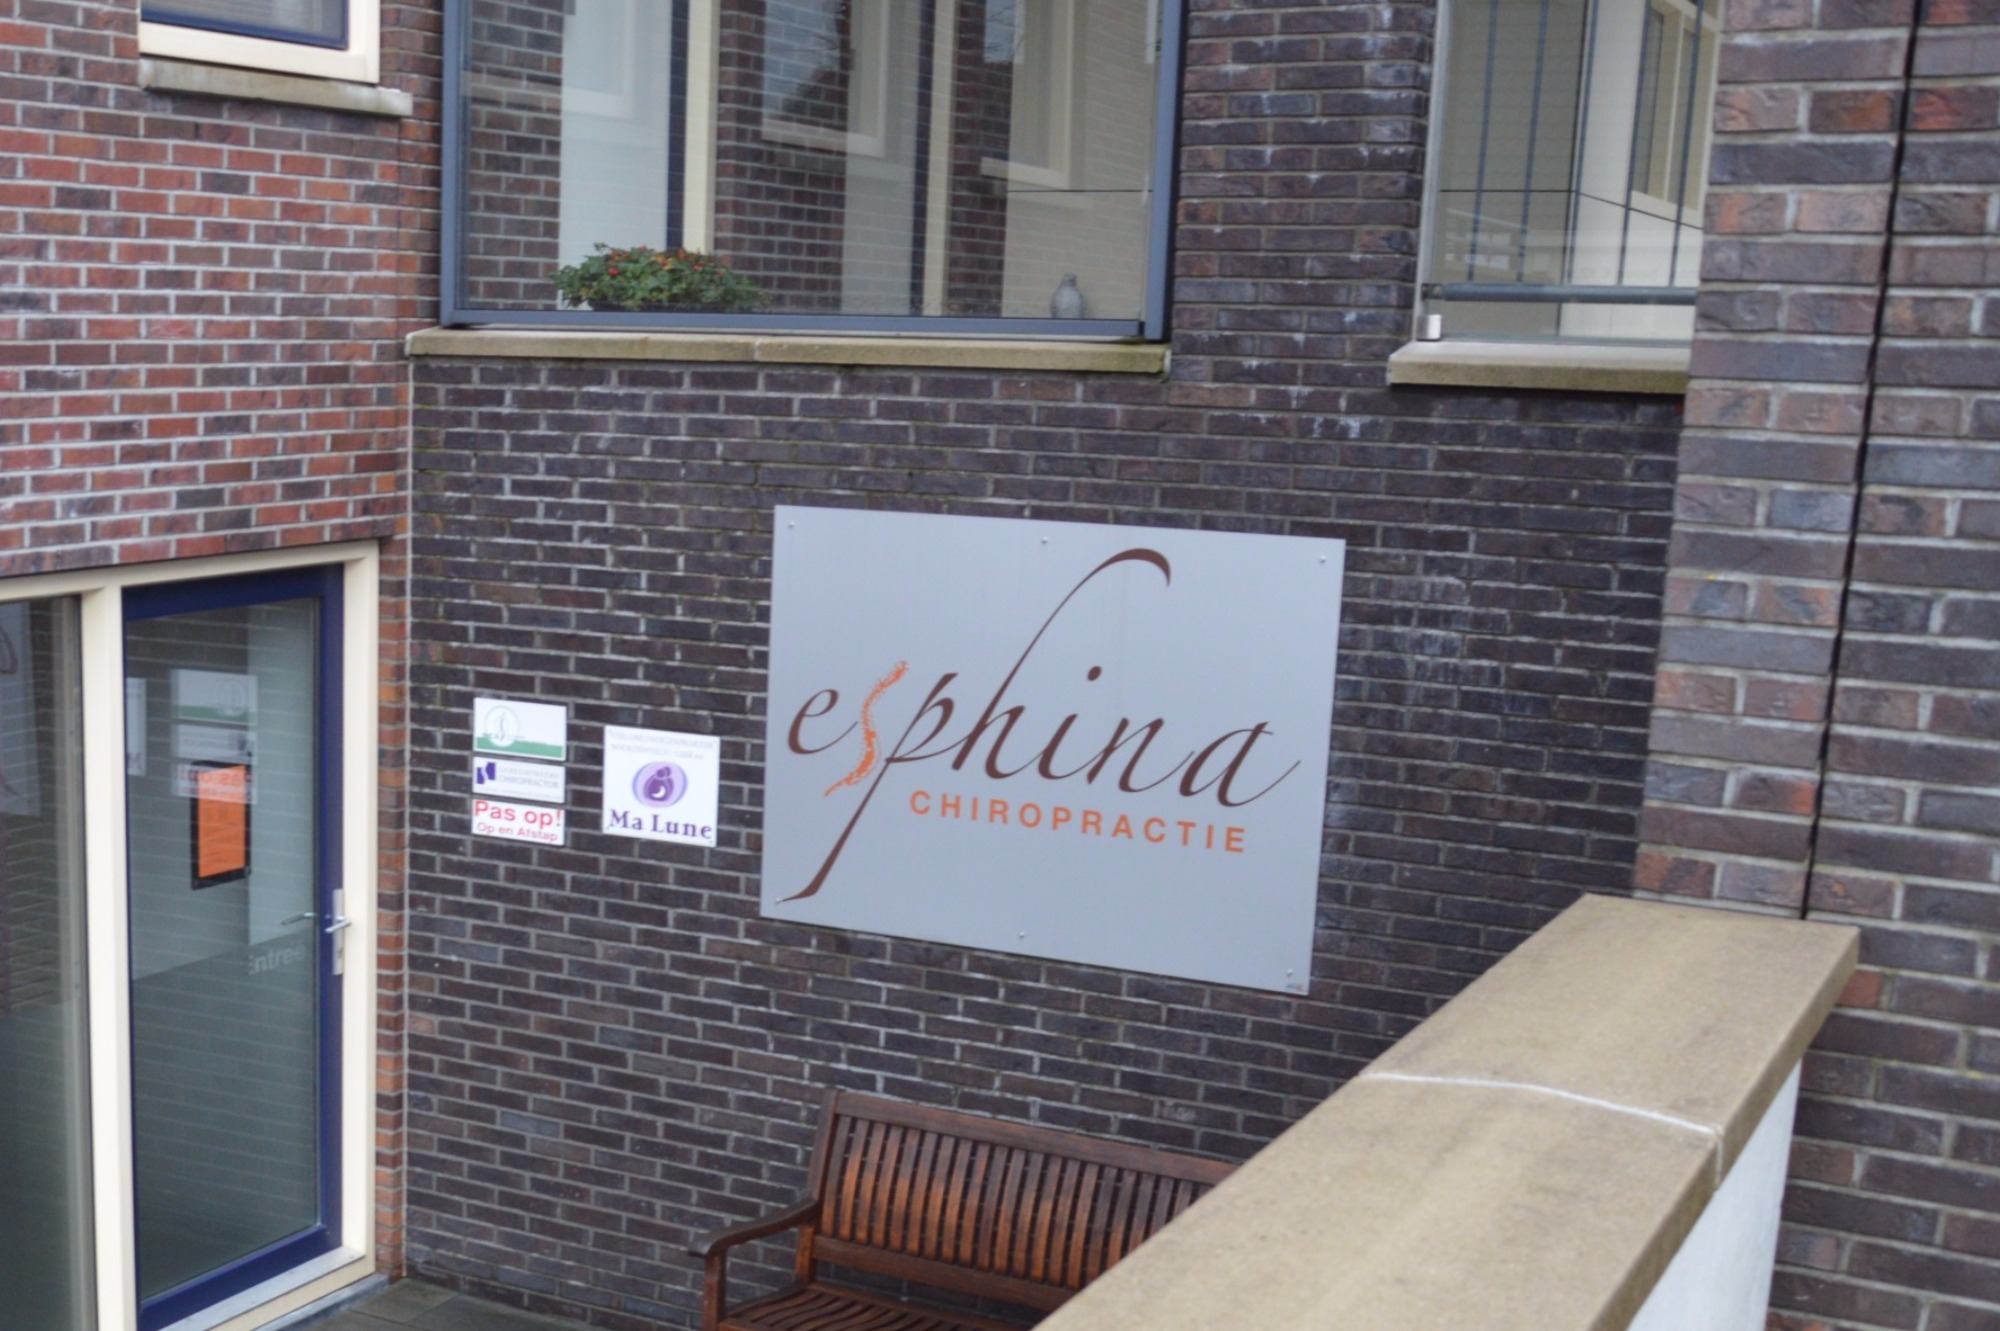 Chiropractie praktijk gevestigd in Nietap | Esphina Chiropractie